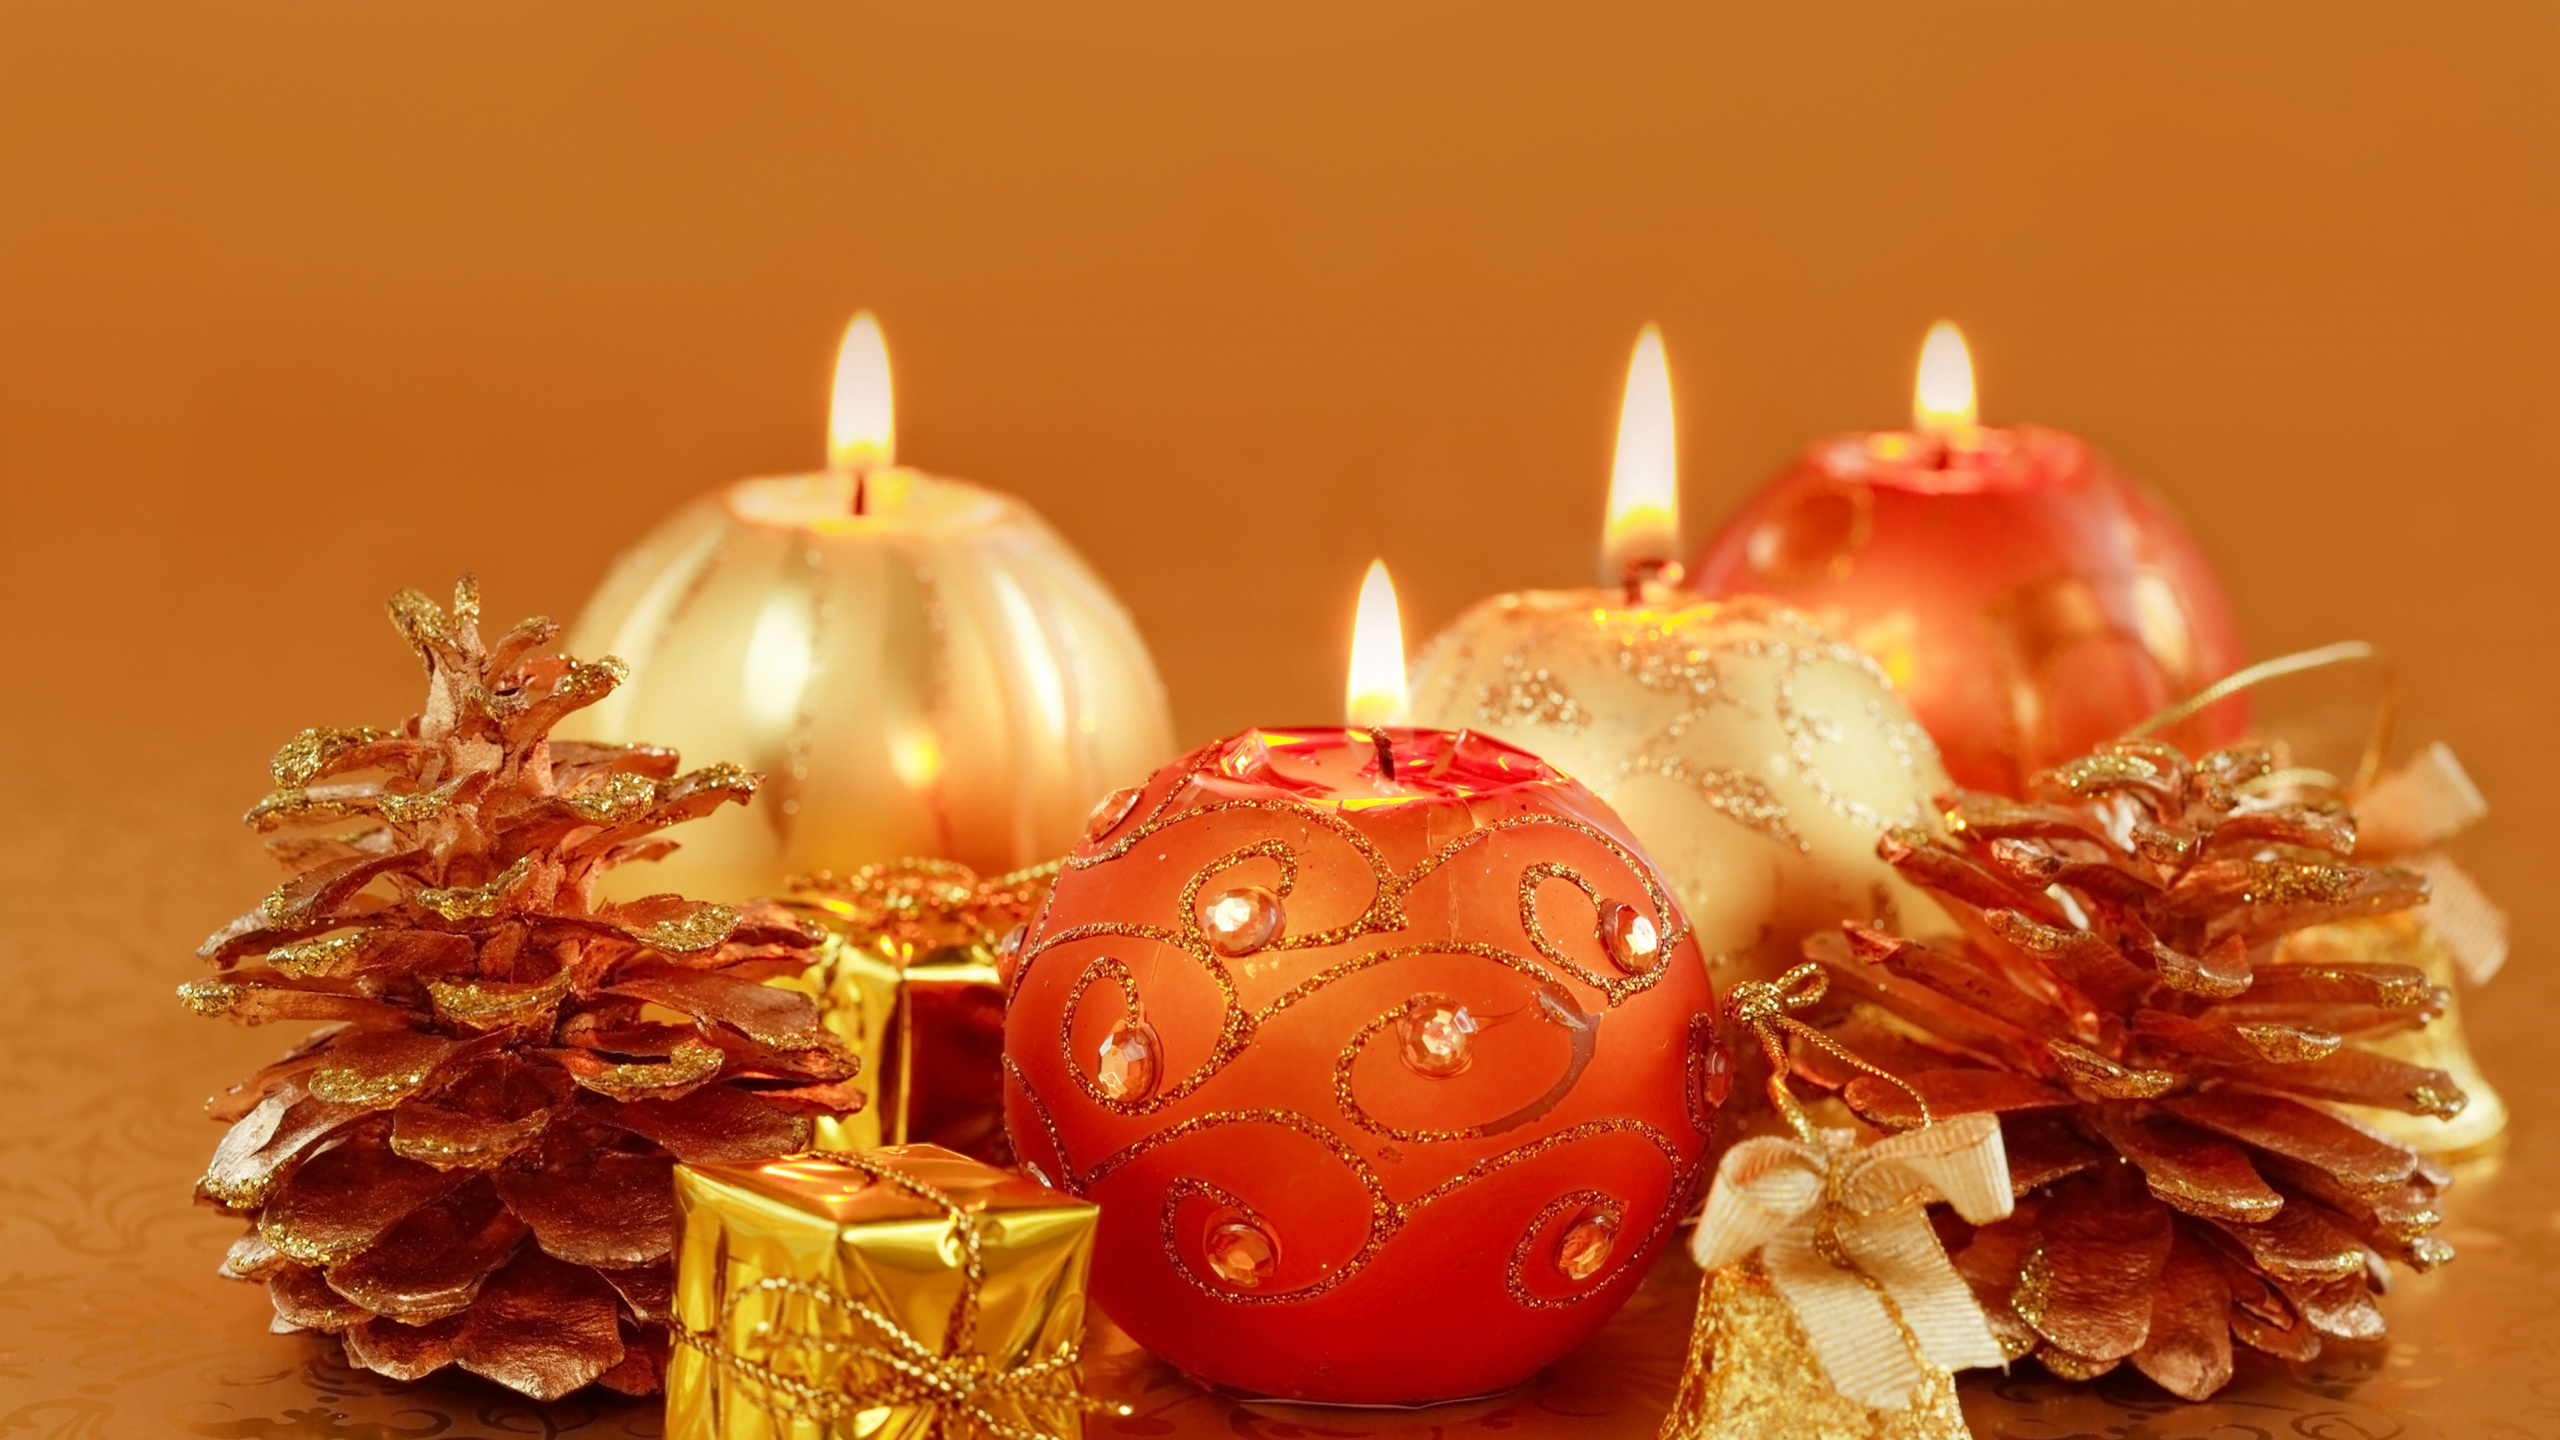 圣诞节那天, 新的一年, 仍然生活, 圣诞节的装饰品, 橙色 壁纸 2560x1440 允许